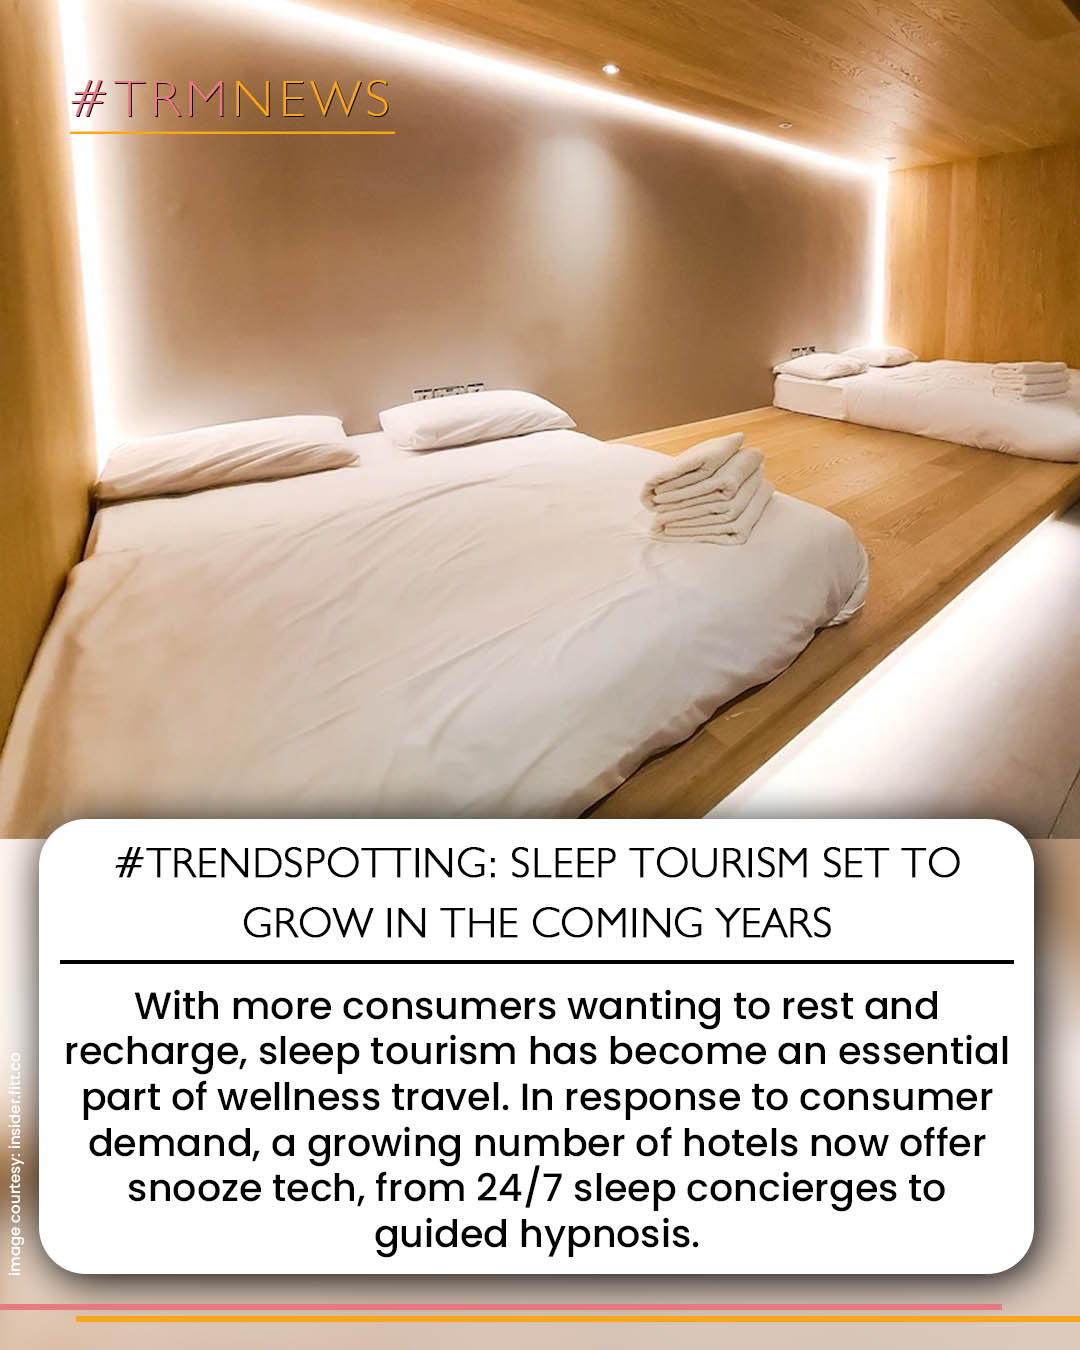 sleep tourism
mindful travel
trm news